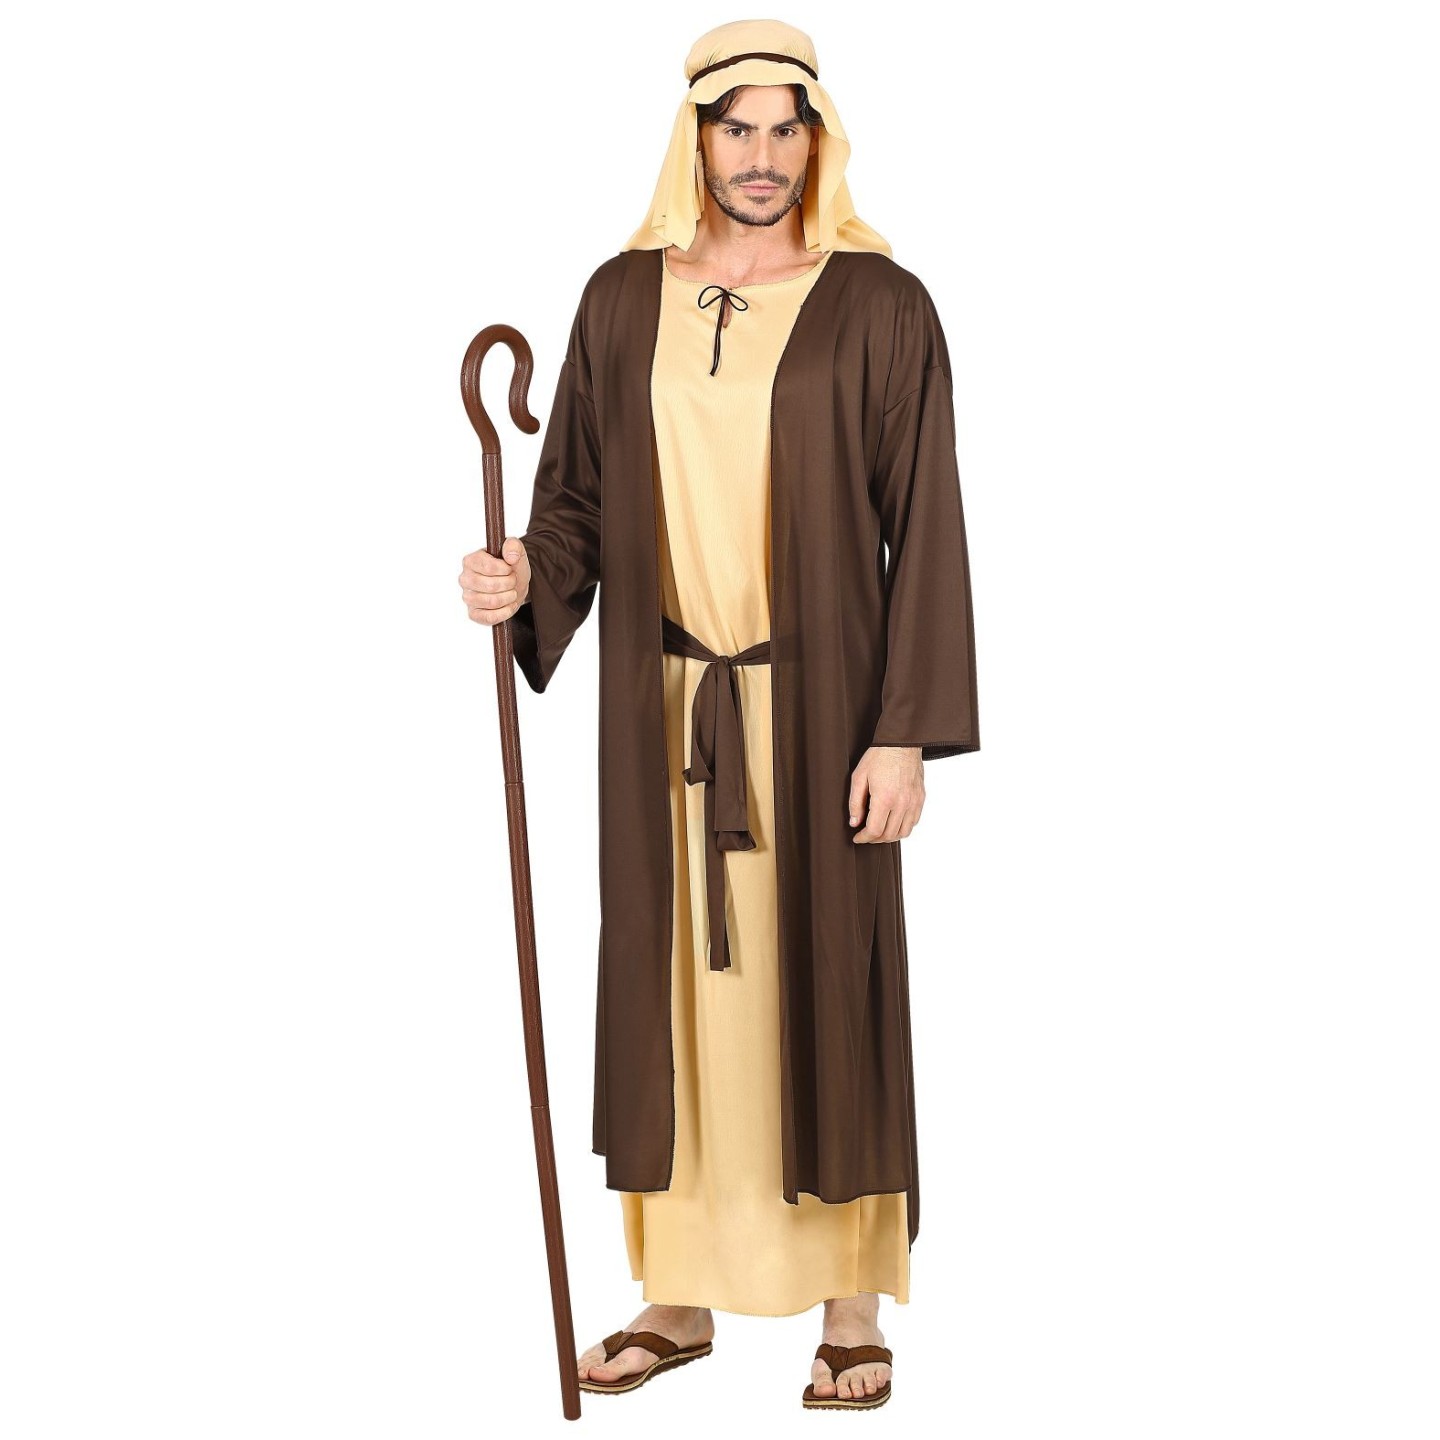 Interpersoonlijk Stapel Bedenk Jozef kostuum|3 koningen kleding| Jokershop.be - Kertstal kleding